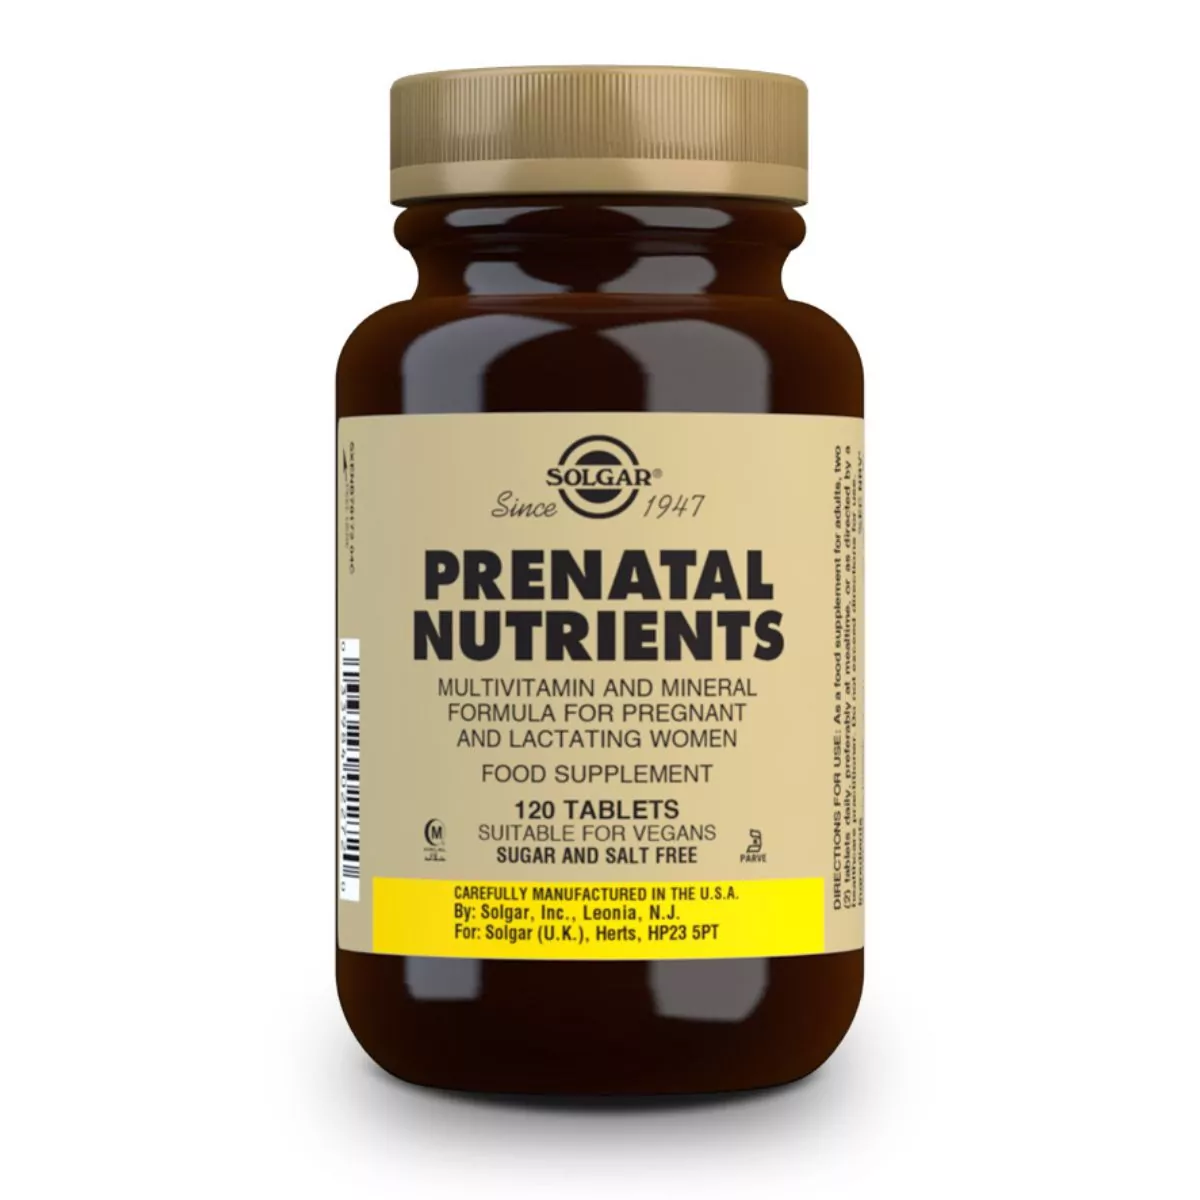 Nutrientes Prenatales – 120 Comprimidos